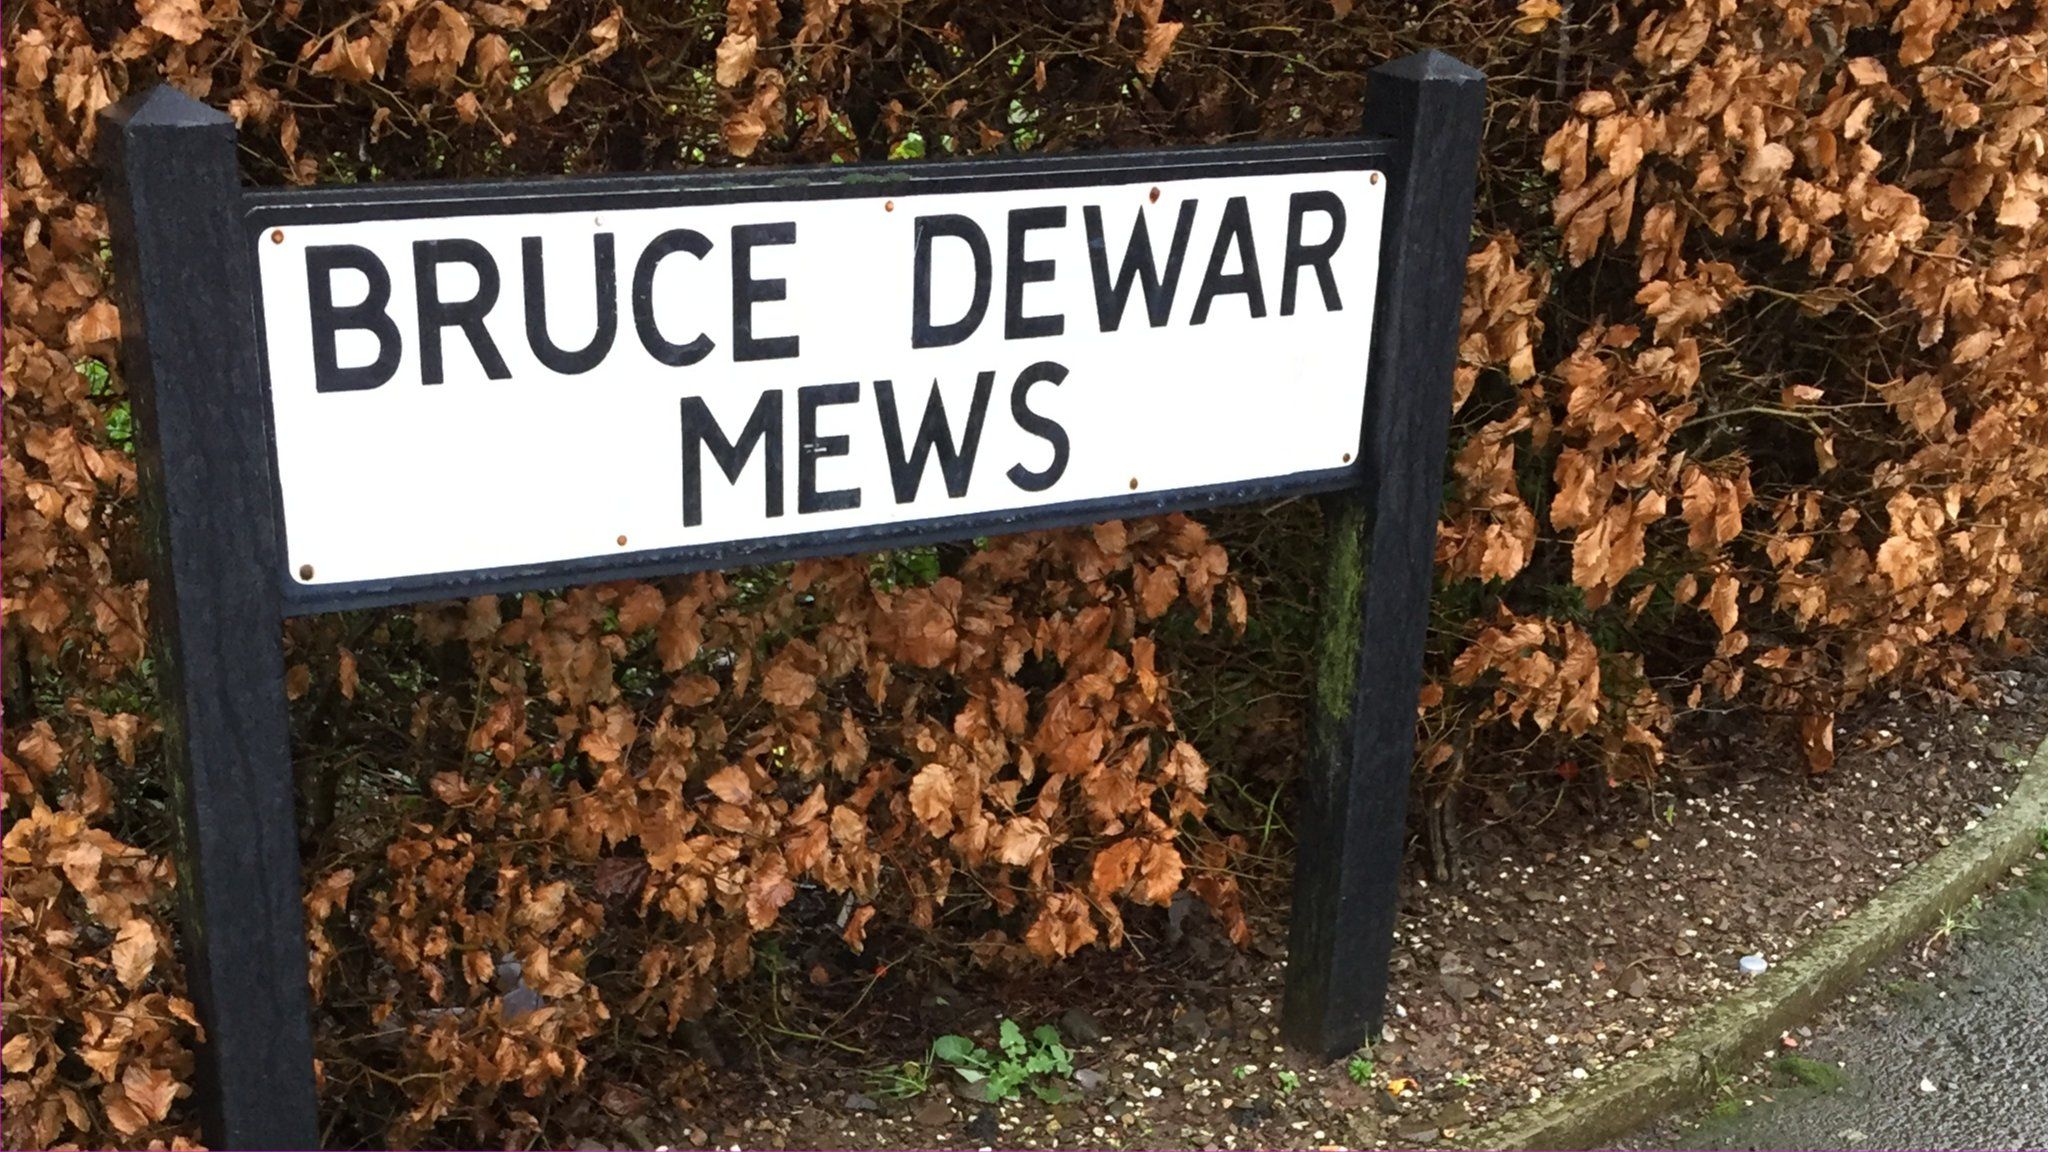 Bruce Dewar Mews sign